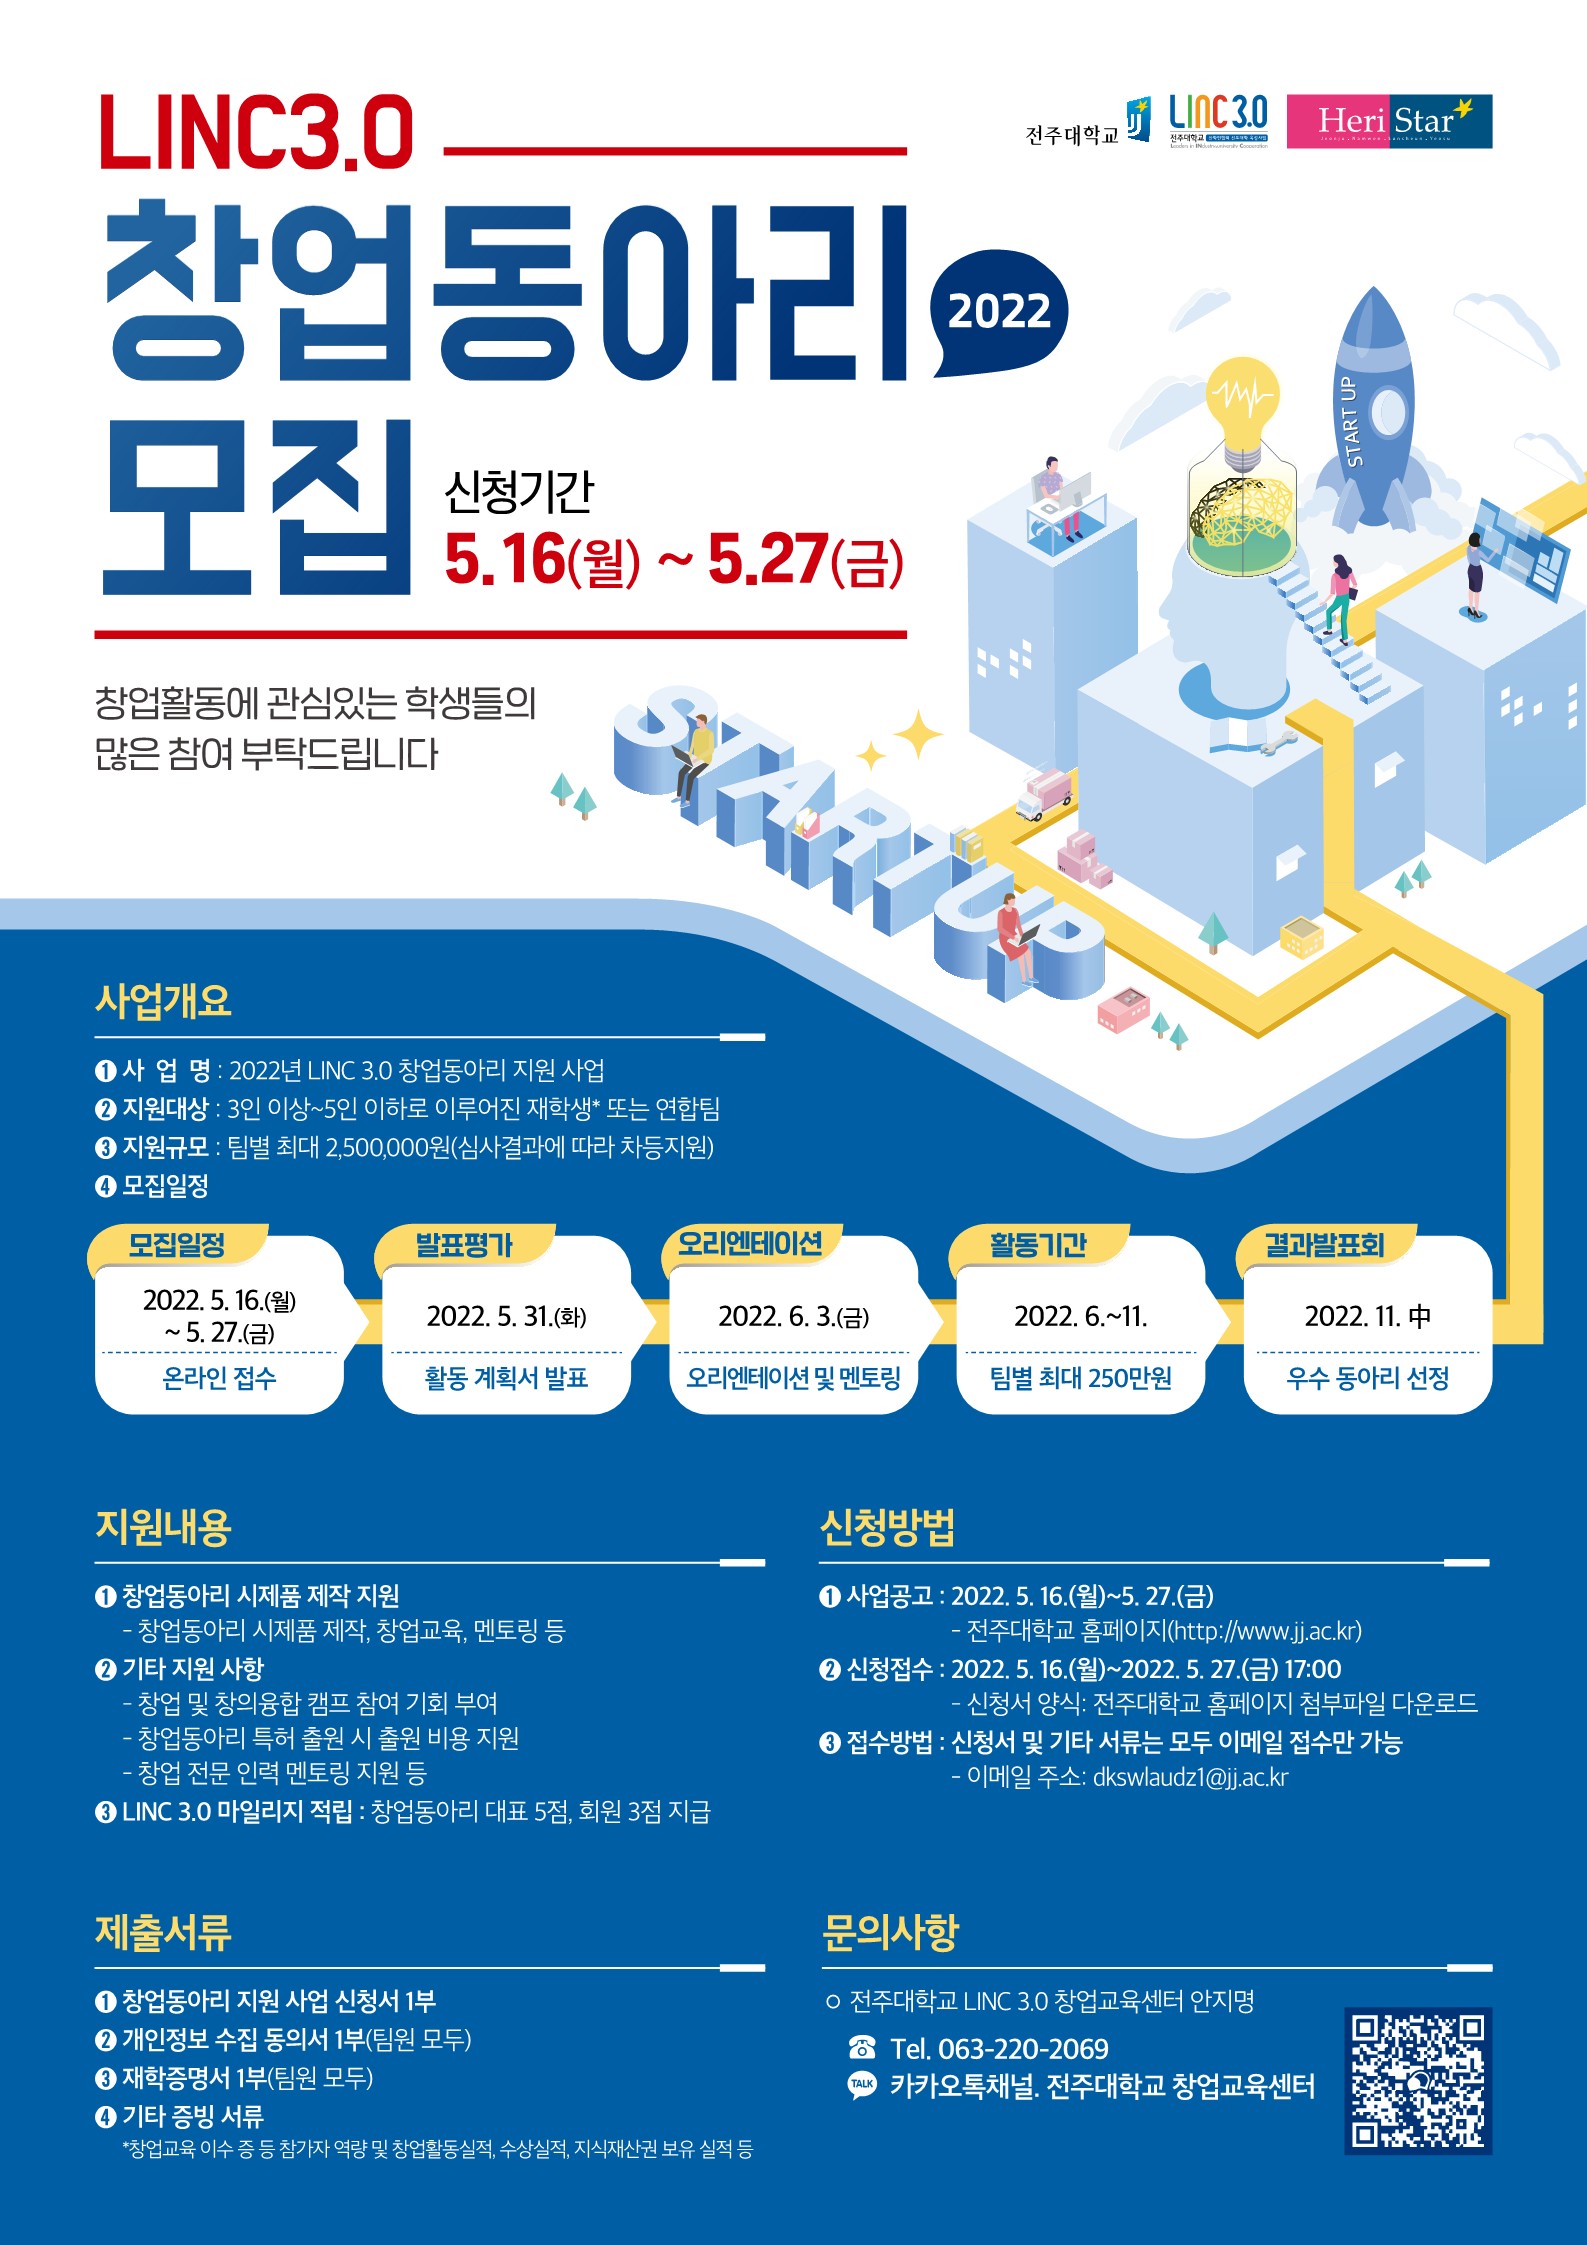  [포스터] 2022 LINC 3.0 창업동아리 홍보 포스터.jpg